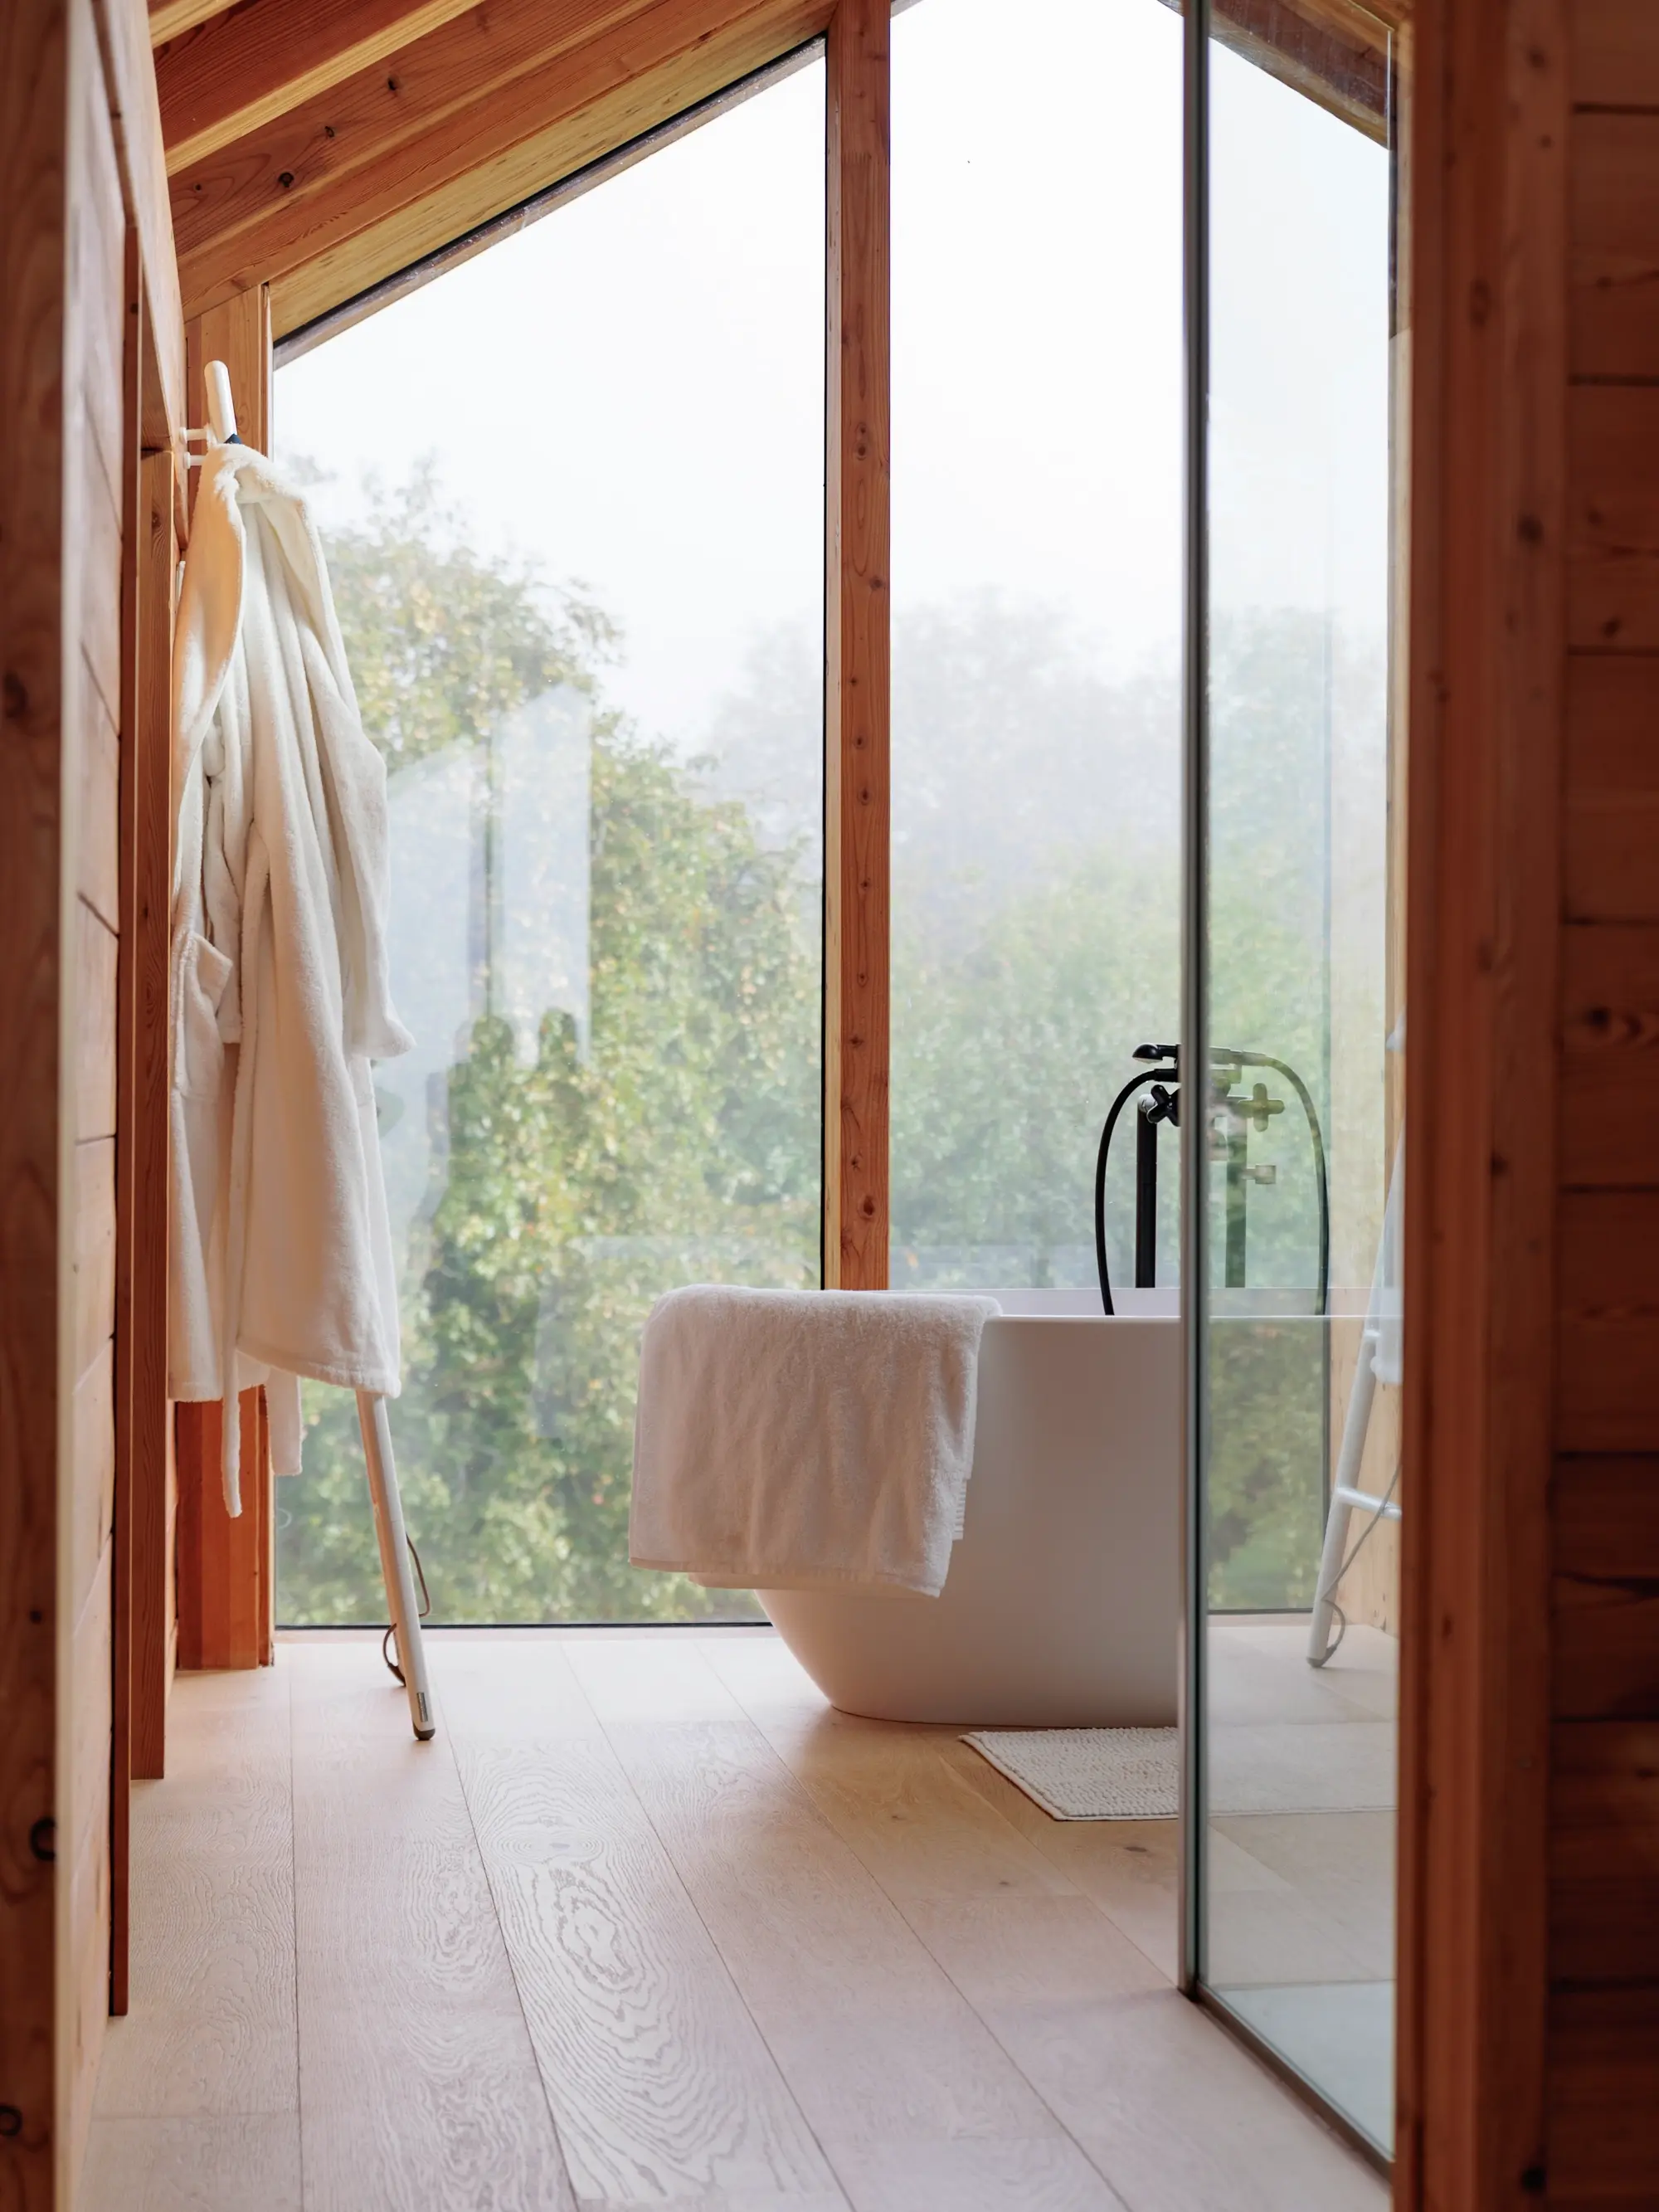 Salle de bain moderne avec baignoire indépendante et vue sur la forêt à travers de grandes fenêtres.